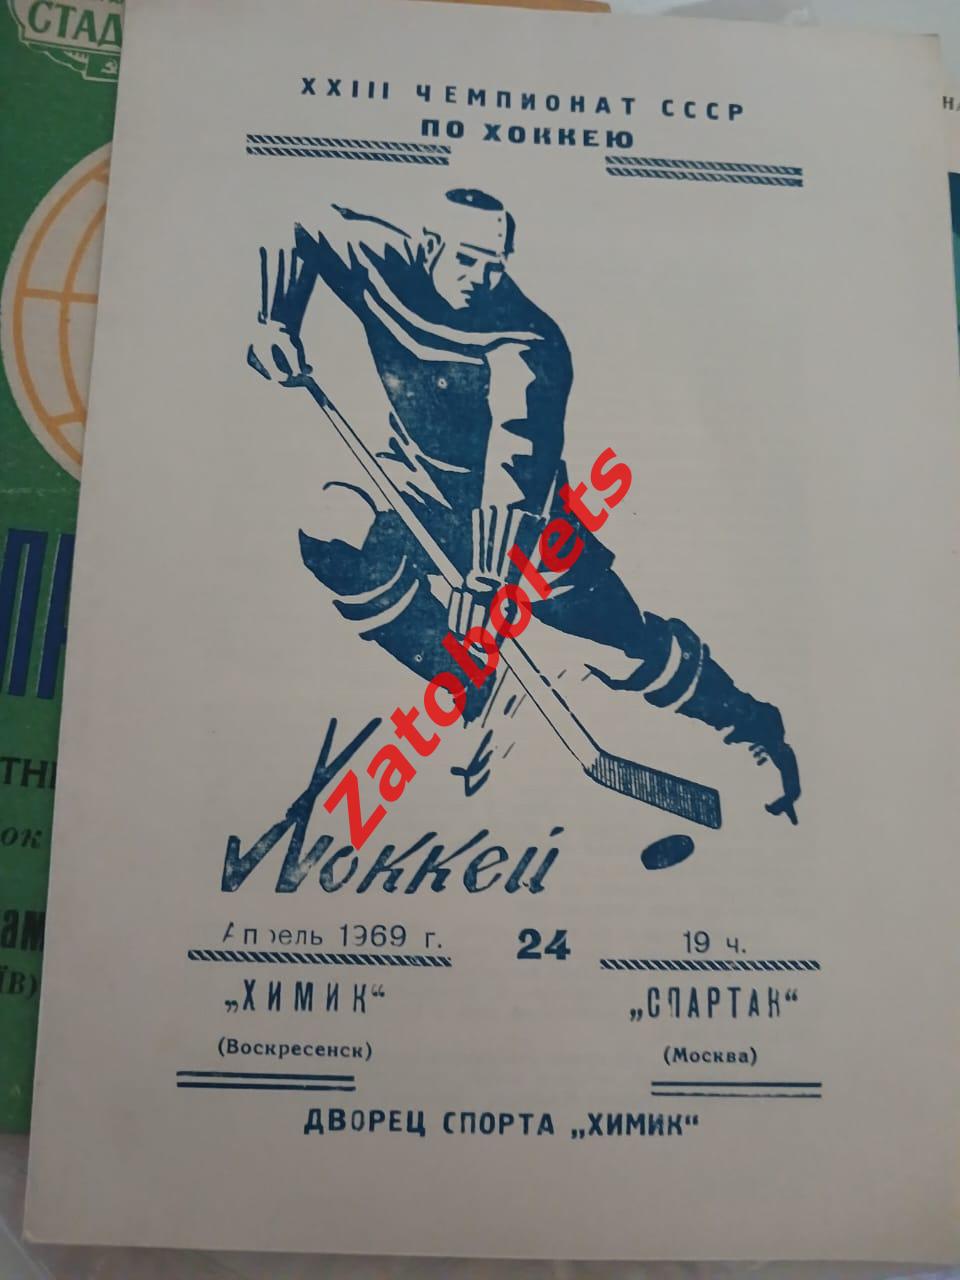 Химик Воскресенск - Спартак Москва 24.04.1969